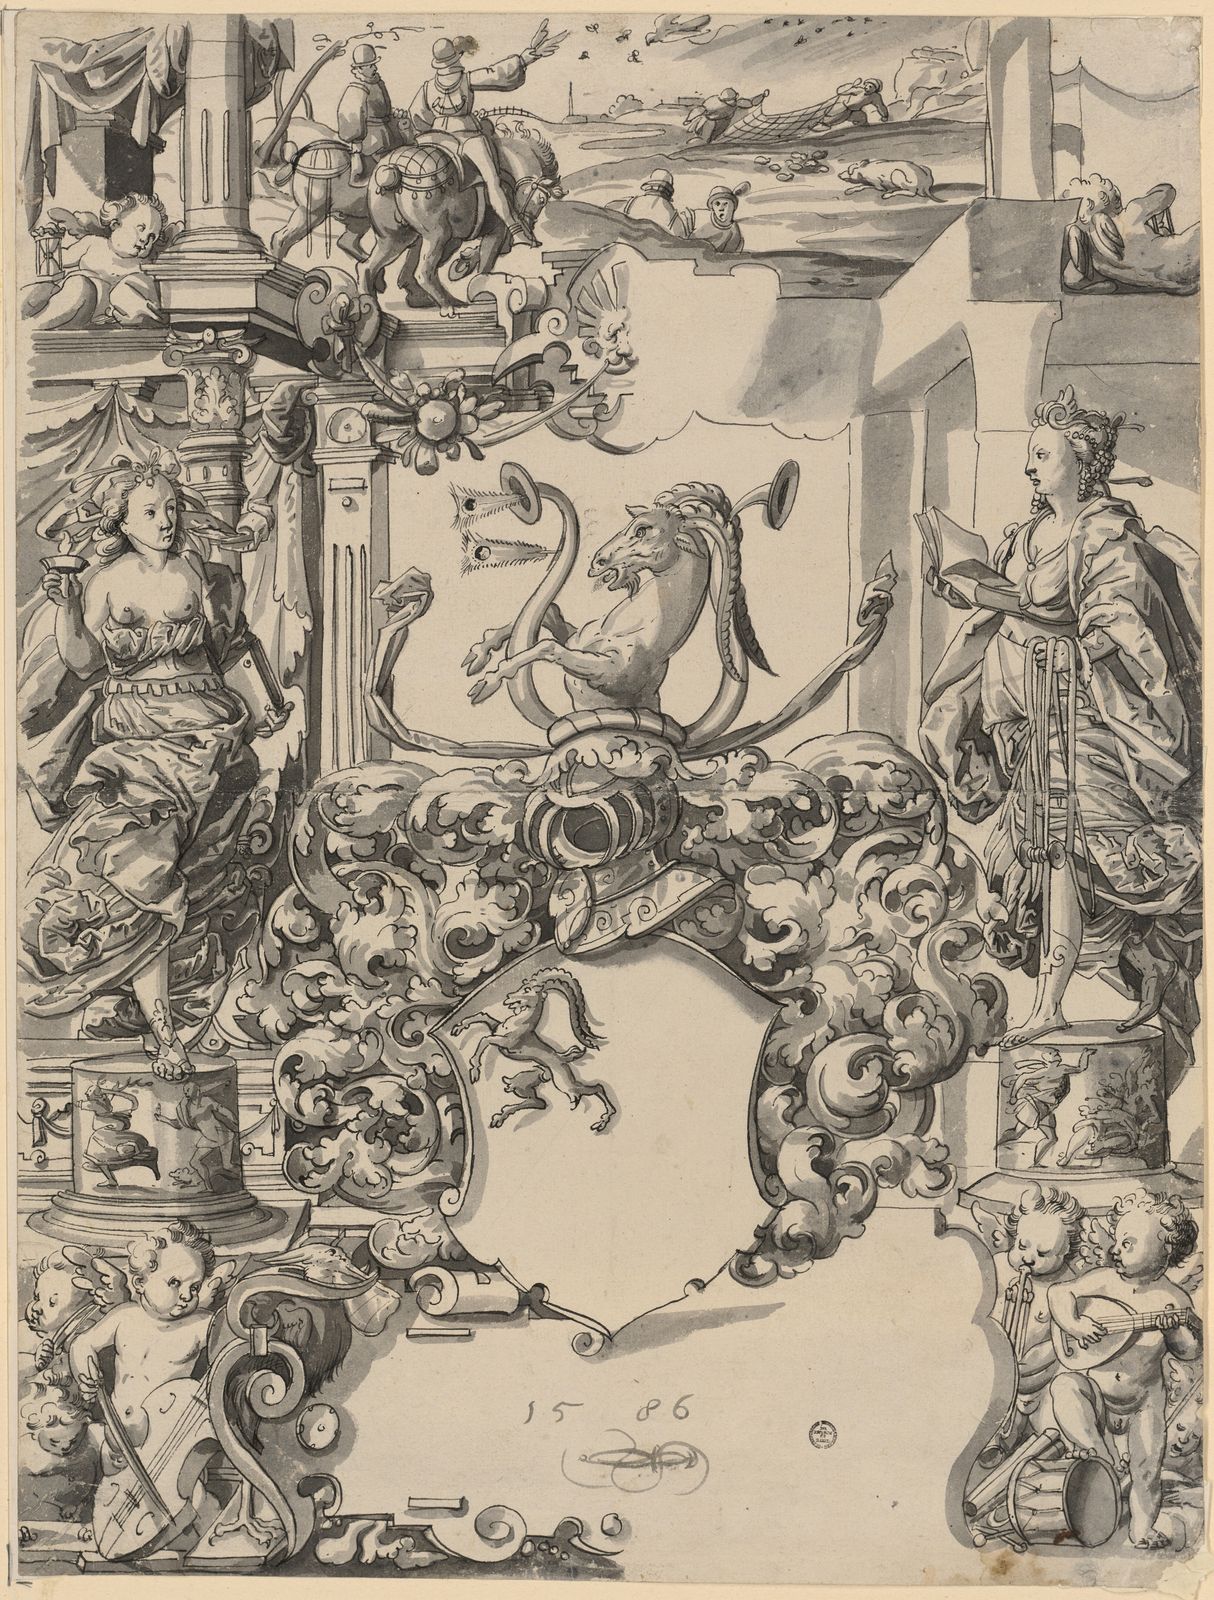 Scheibenriss mit leerem Wappenschild (Gremlich von Juningen?), flankiert von Temperantia und Veritas (?), im Oberbild Wachteljagd